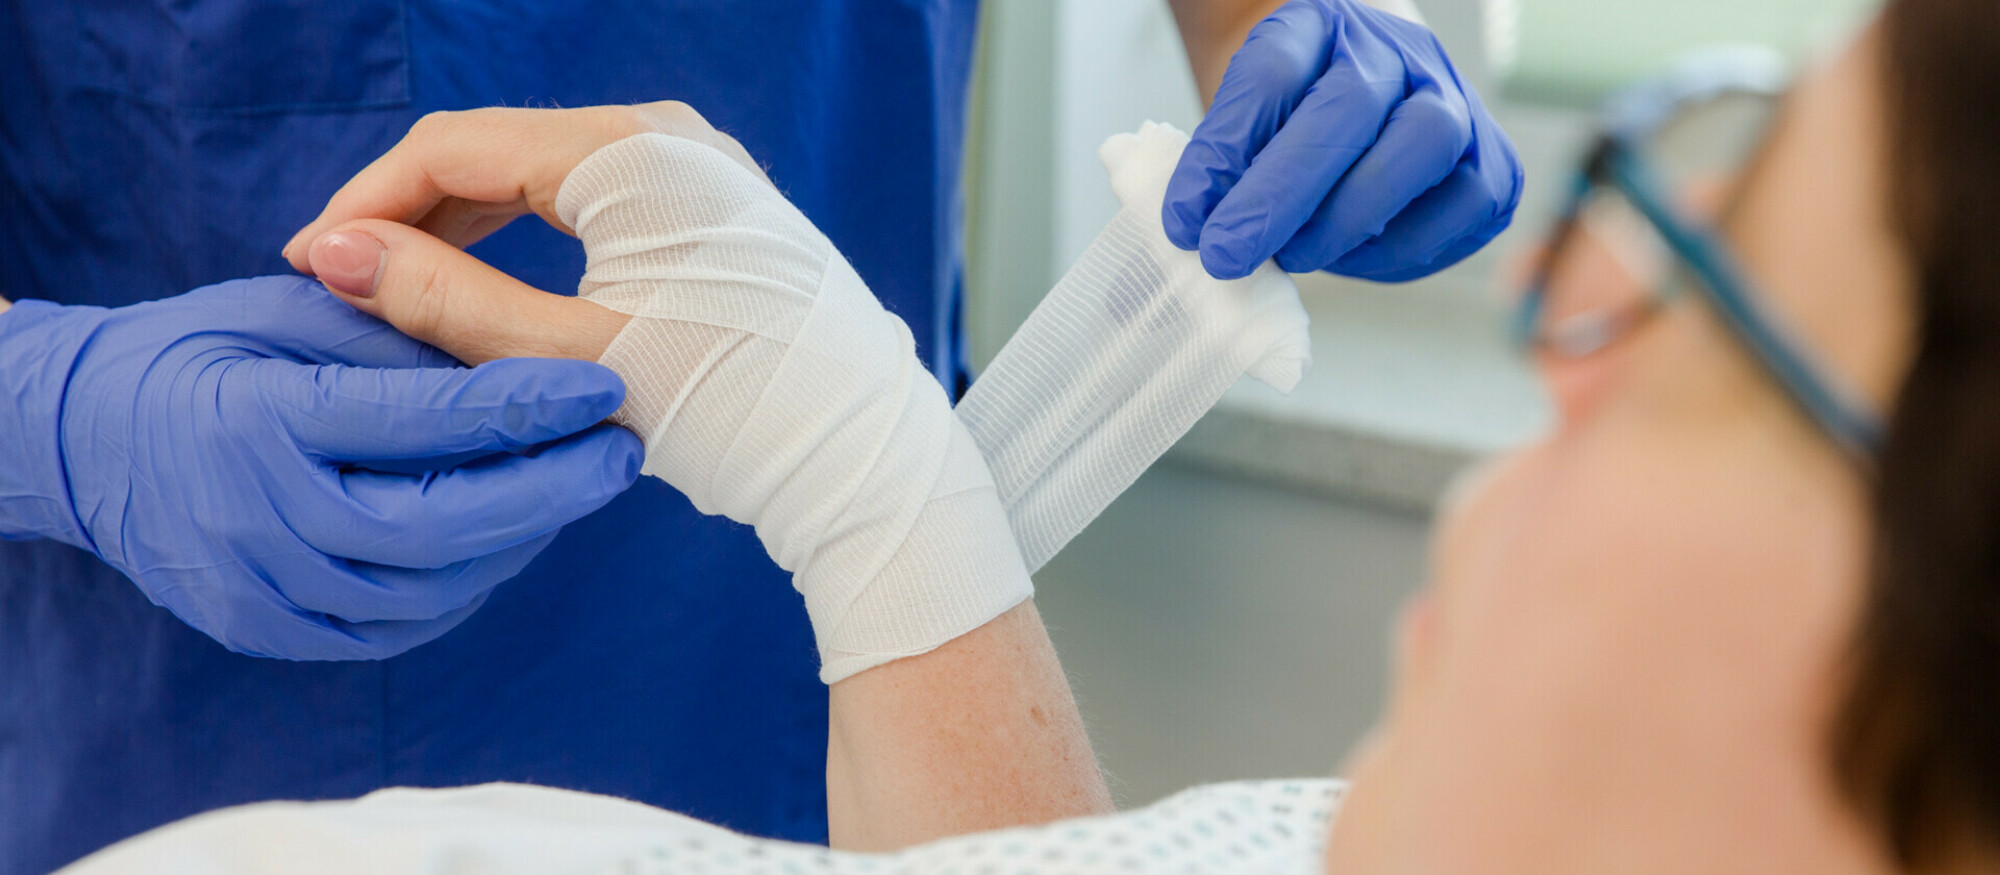 Patienten wird an Hand mit Verband gebunden